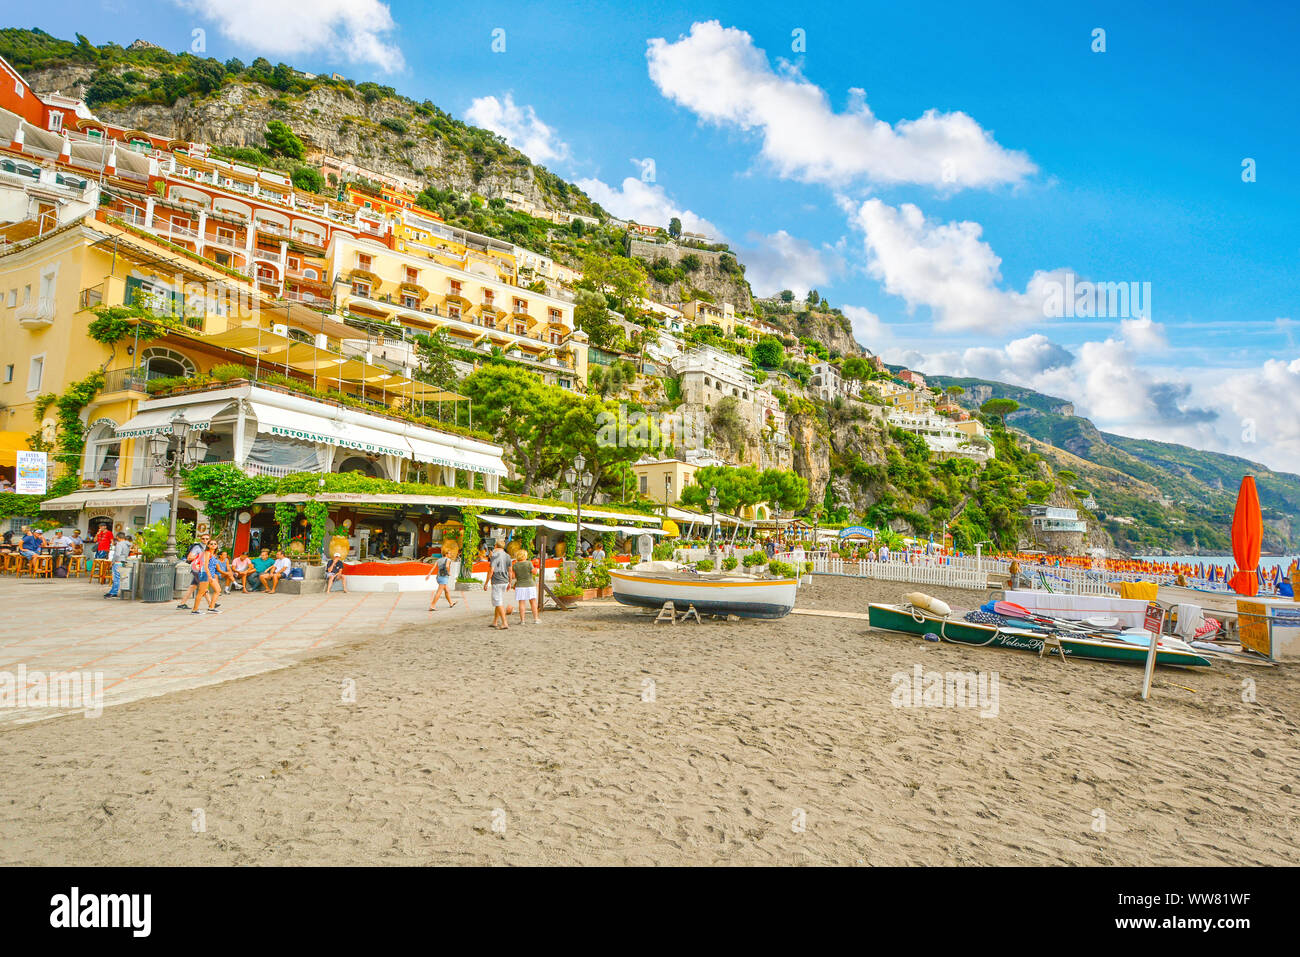 Los turistas disfrutan de la playa, restaurantes, resorts y paseo en la colina de la ciudad costera de Positano, Italia en la costa de Amalfi. Foto de stock